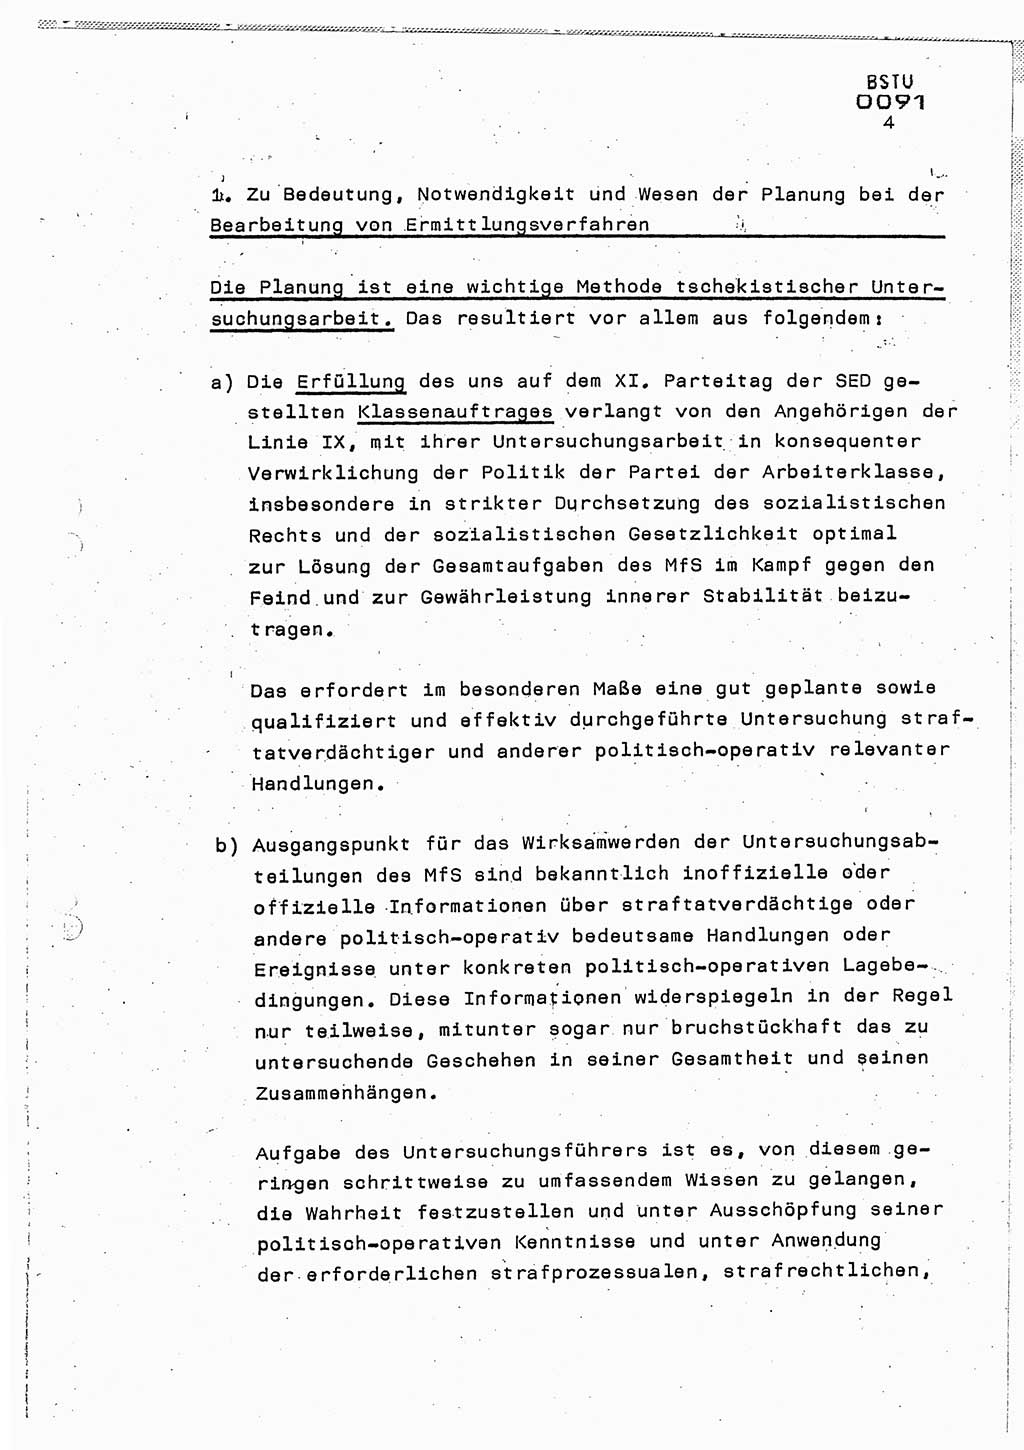 Lektion Ministerium für Staatssicherheit (MfS) [Deutsche Demokratische Republik (DDR)], Hauptabteilung (HA) Ⅸ, Berlin 1987, Seite 4 (Lekt. Pln. Bearb. EV MfS DDR HA Ⅸ /87 1987, S. 4)